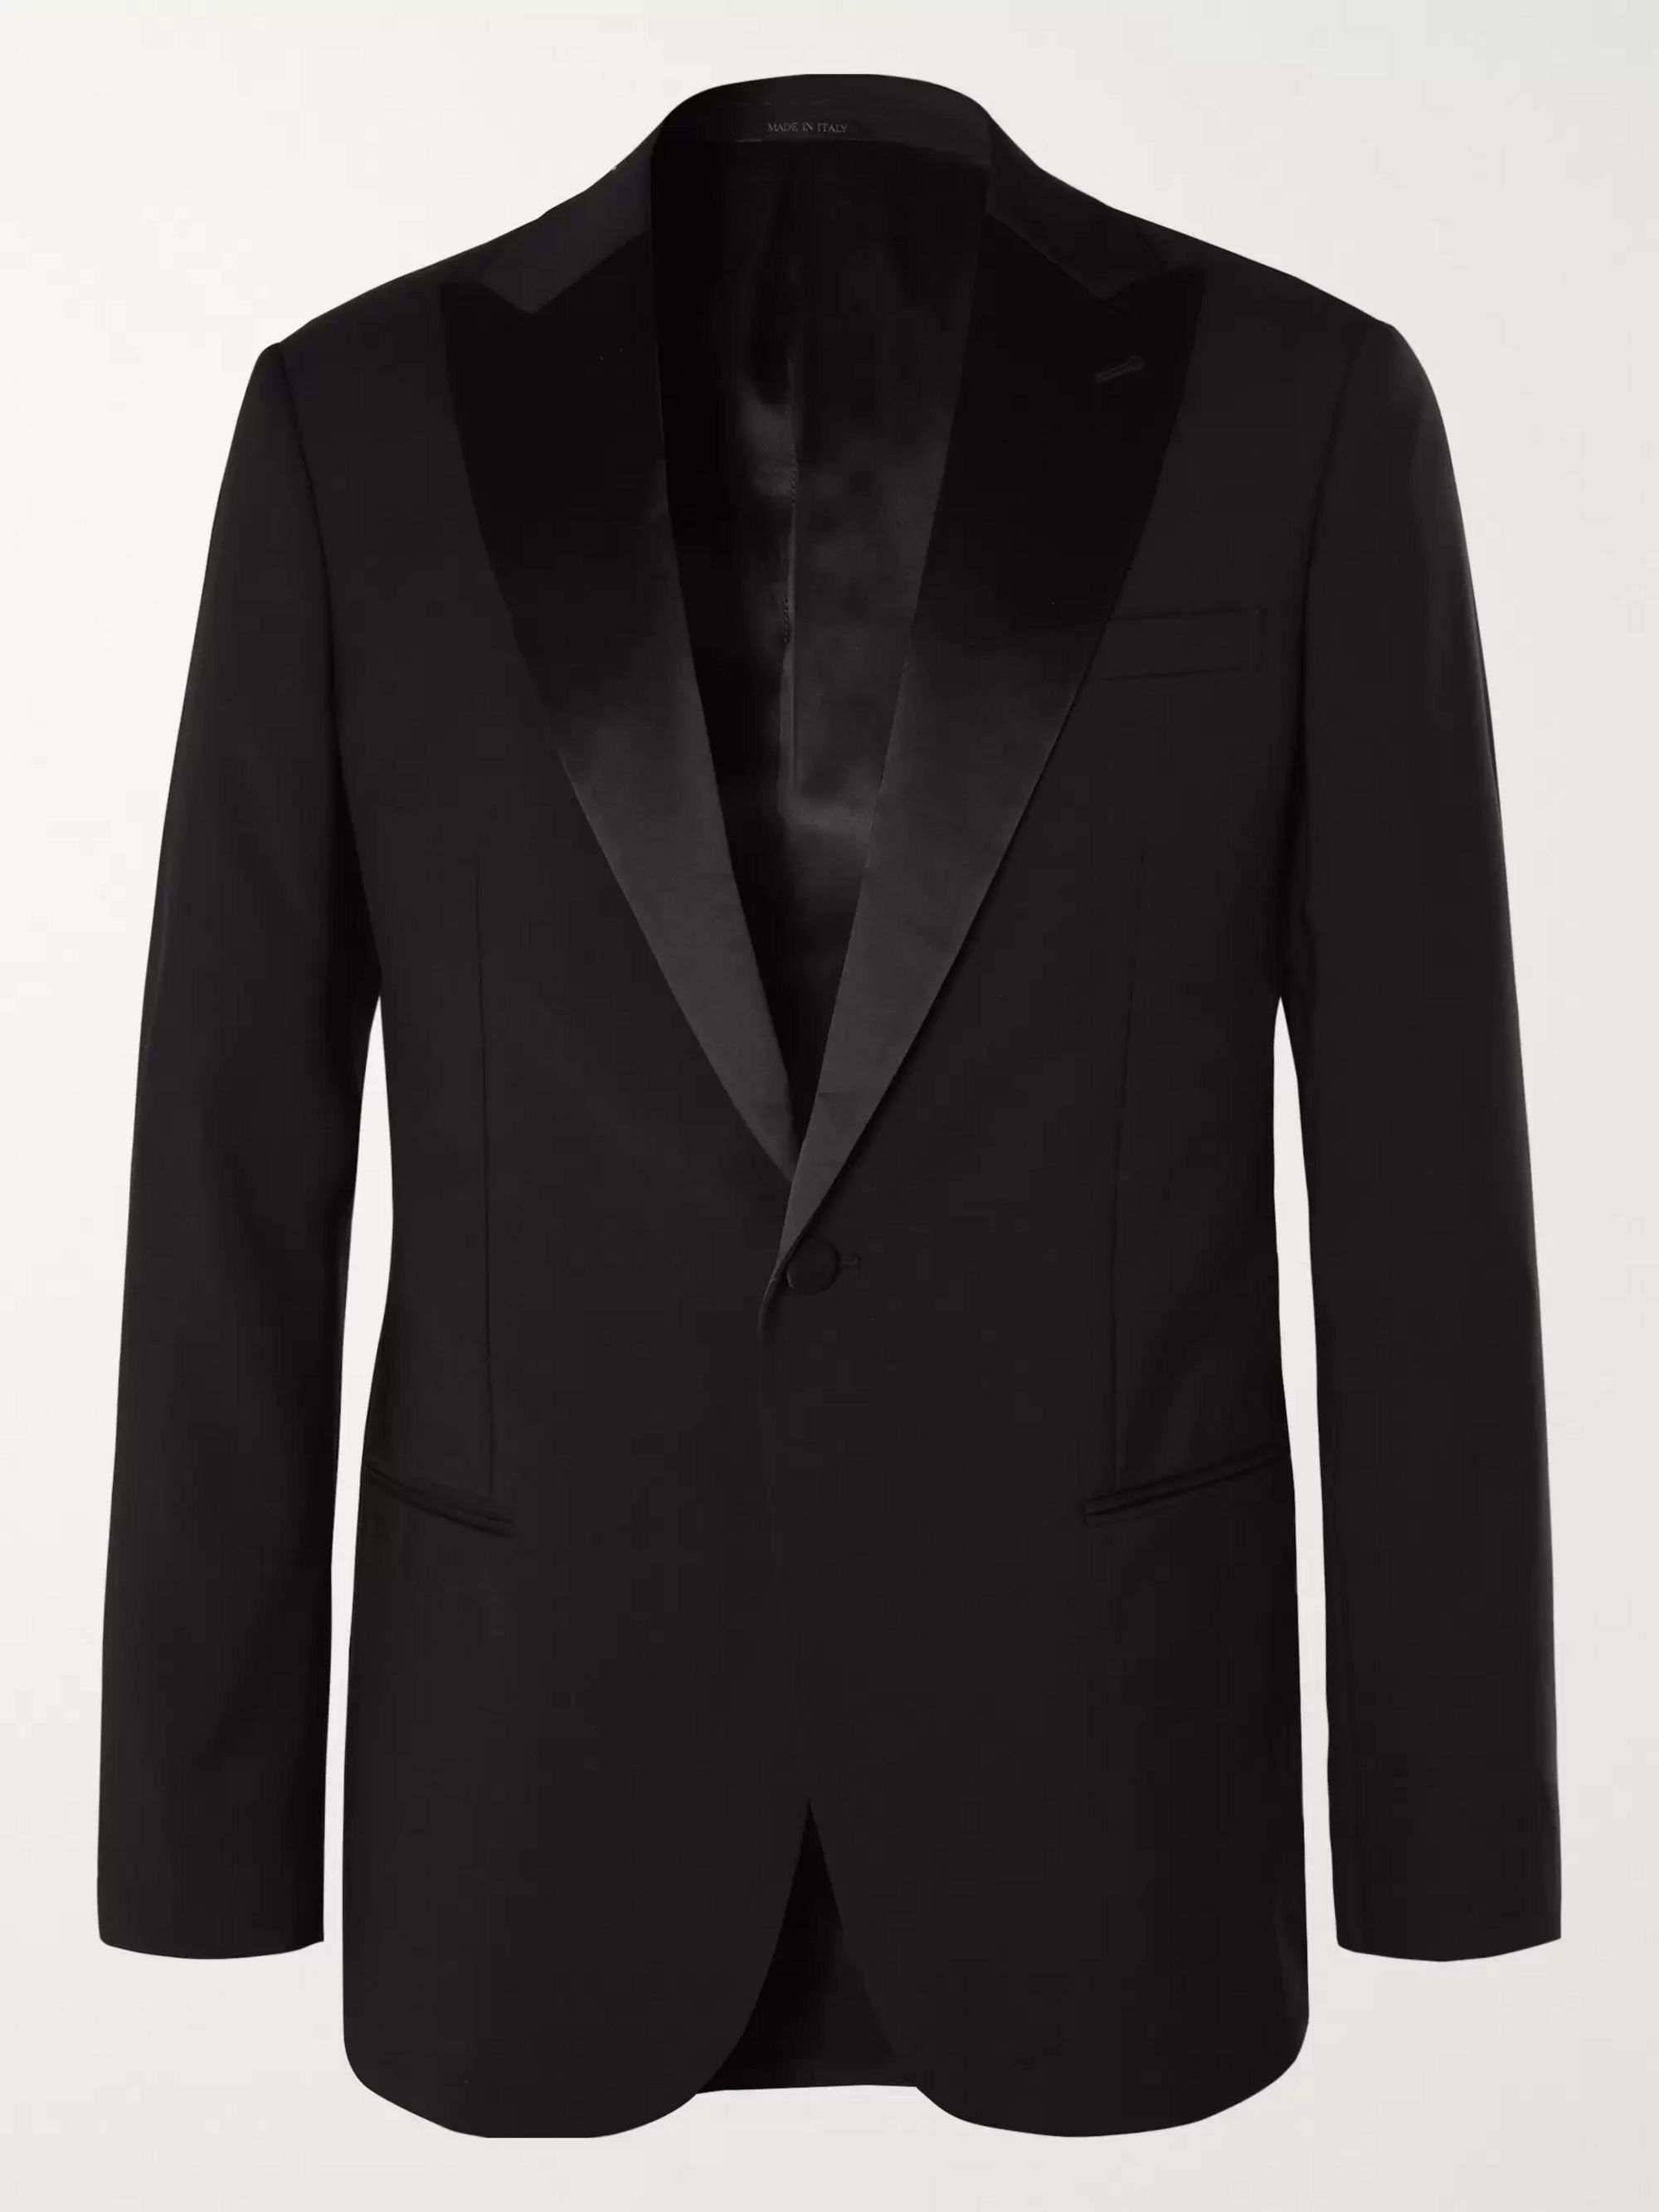 armani black jacket